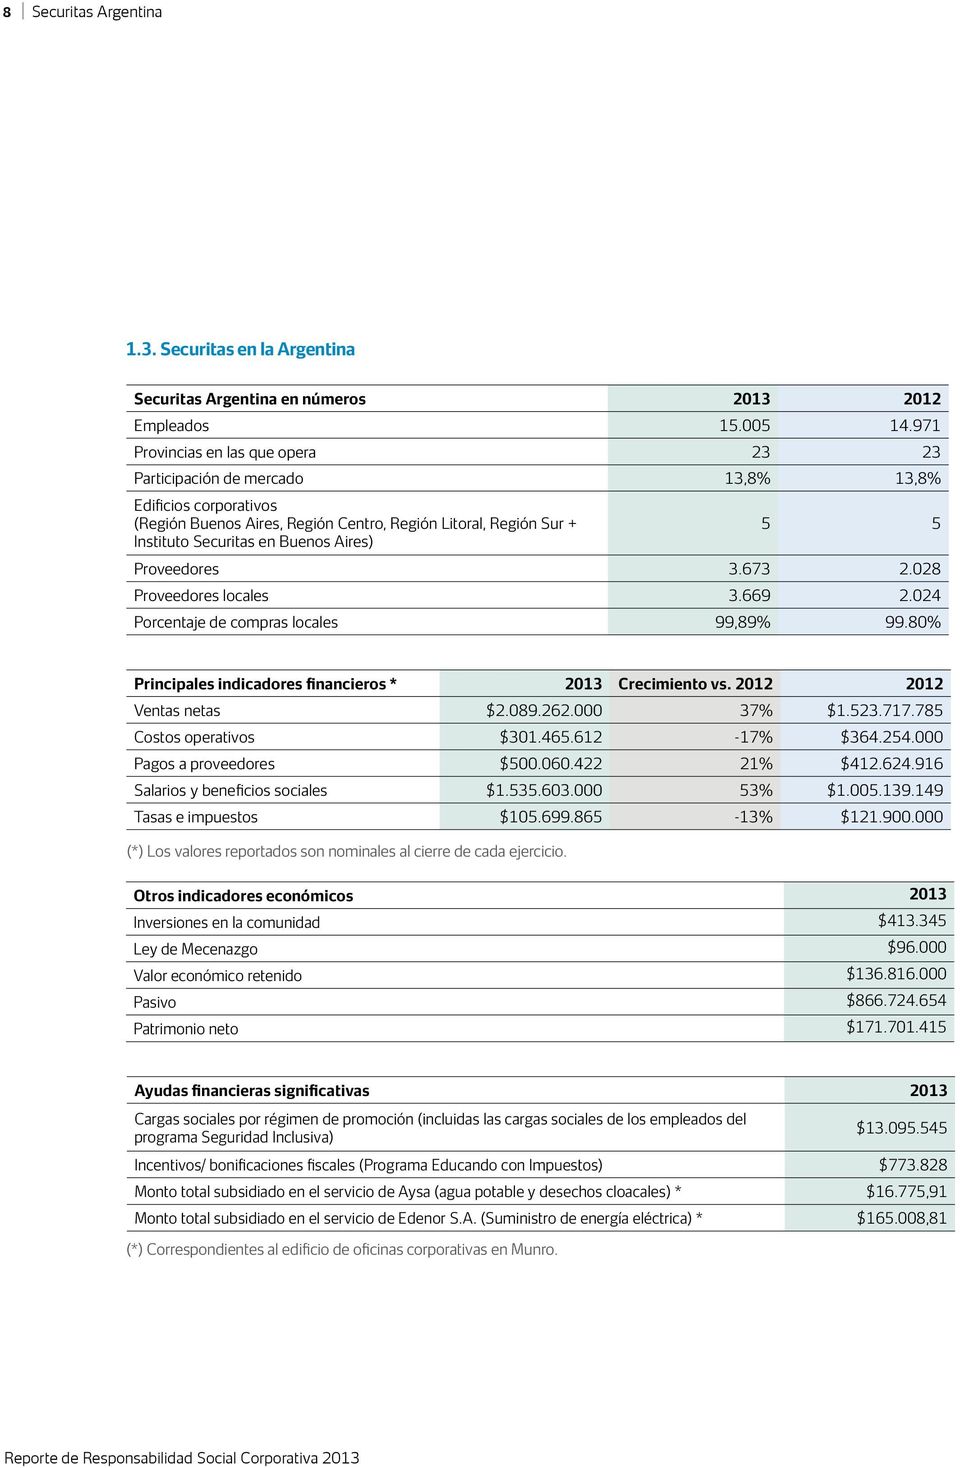 Aires) 5 5 Proveedores 3.673 2.028 Proveedores locales 3.669 2.024 Porcentaje de compras locales 99,89% 99.80% Principales indicadores financieros * 2013 Crecimiento vs. 2012 2012 Ventas netas $2.089.